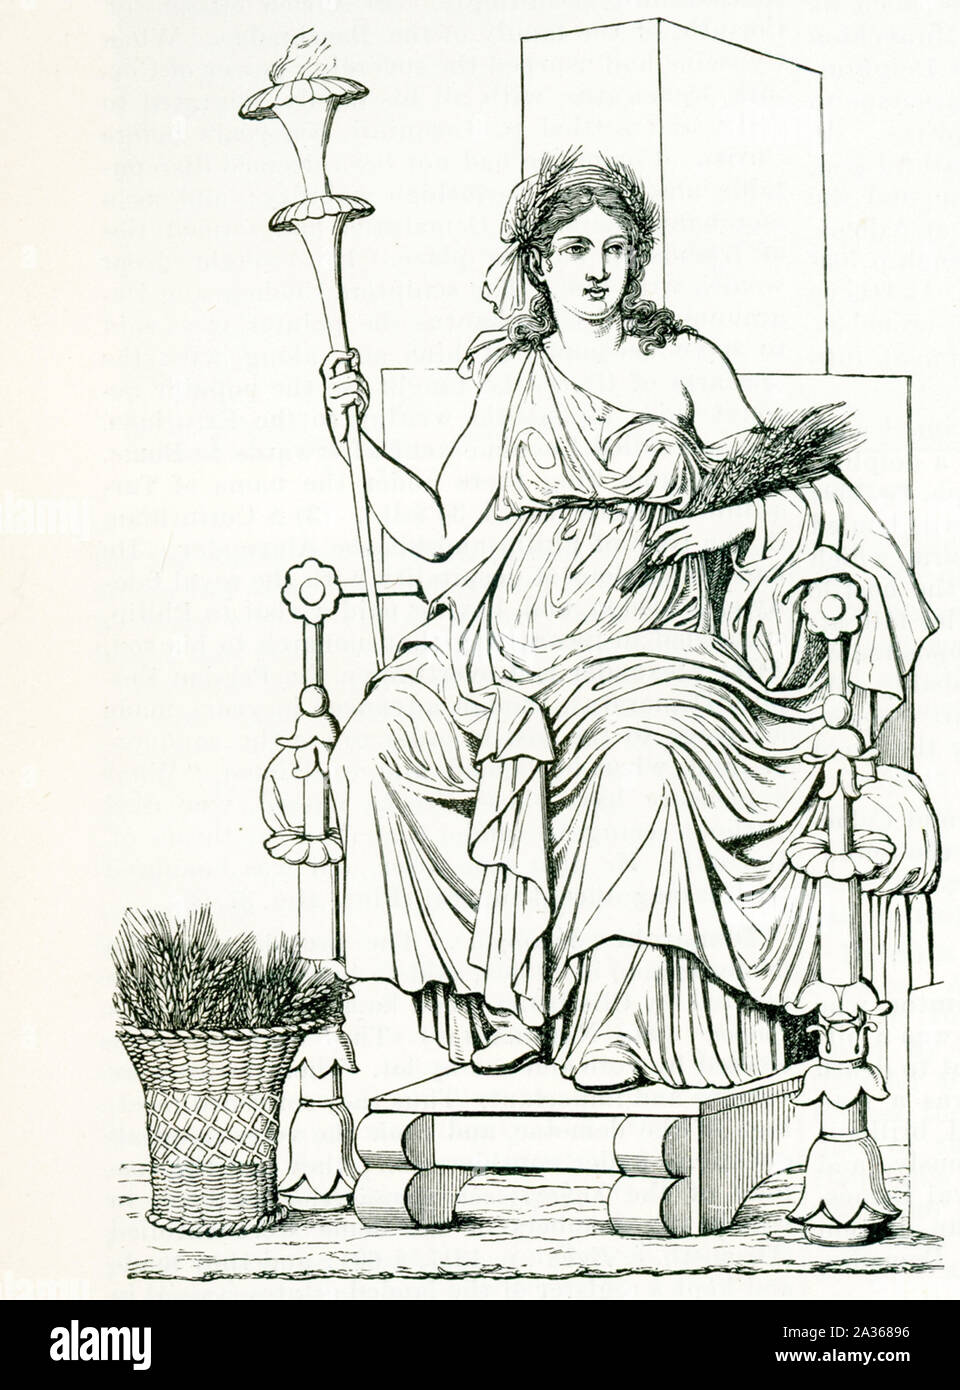 Hier im Bild ist der griechischen Göttin Demeter, aus einem Wandgemälde in Pompeji (die italienische Owen im Jahr 79 N.CHR. in den Ausbruch des Vesuvs zerstört. Demeter ist die Göttin der Ernte und leitet Körner und die Fruchtbarkeit der Erde. Obwohl Sie in den meisten Fällen wurde als Göttin der Ernte bezeichnet, sie war auch Göttin der heilige Gesetz und den Kreislauf von Leben und Tod. Ihre römische Entsprechung war Ceres. Stockfoto